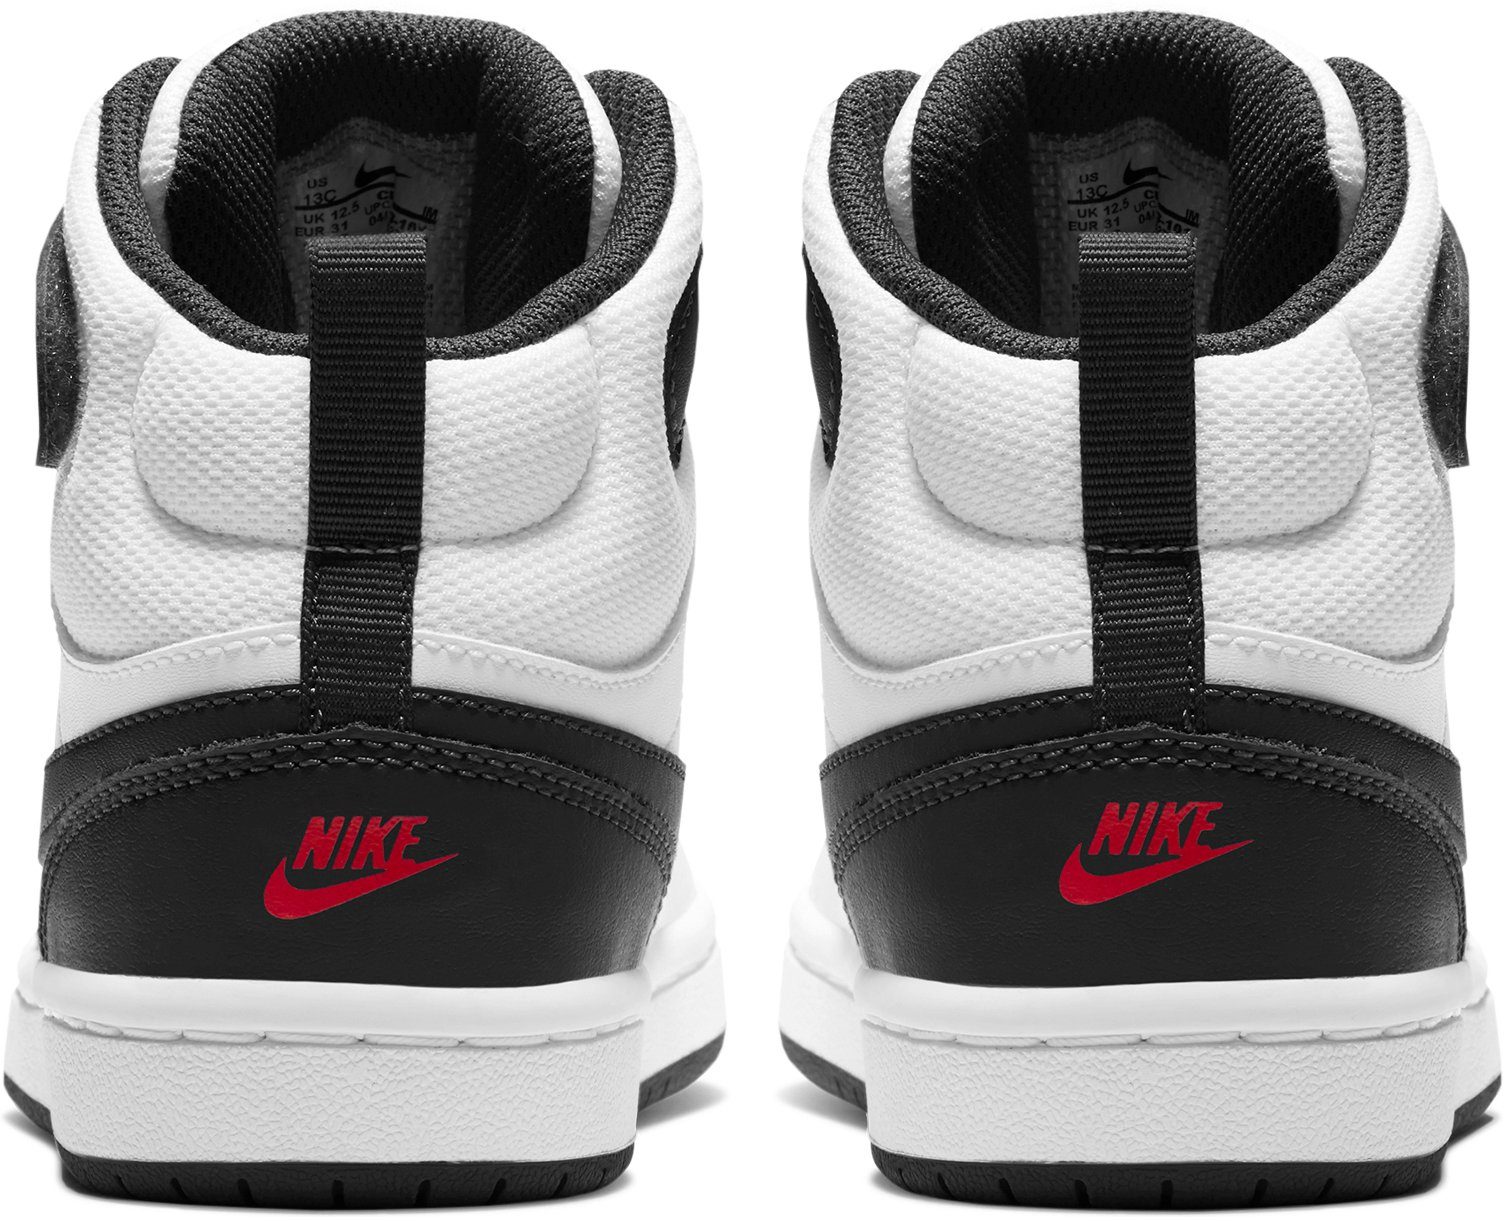 Sneaker Spuren den weiß/rot MID des auf COURT 2 Nike Design Sportswear 1 Air (PS) Force BOROUGH